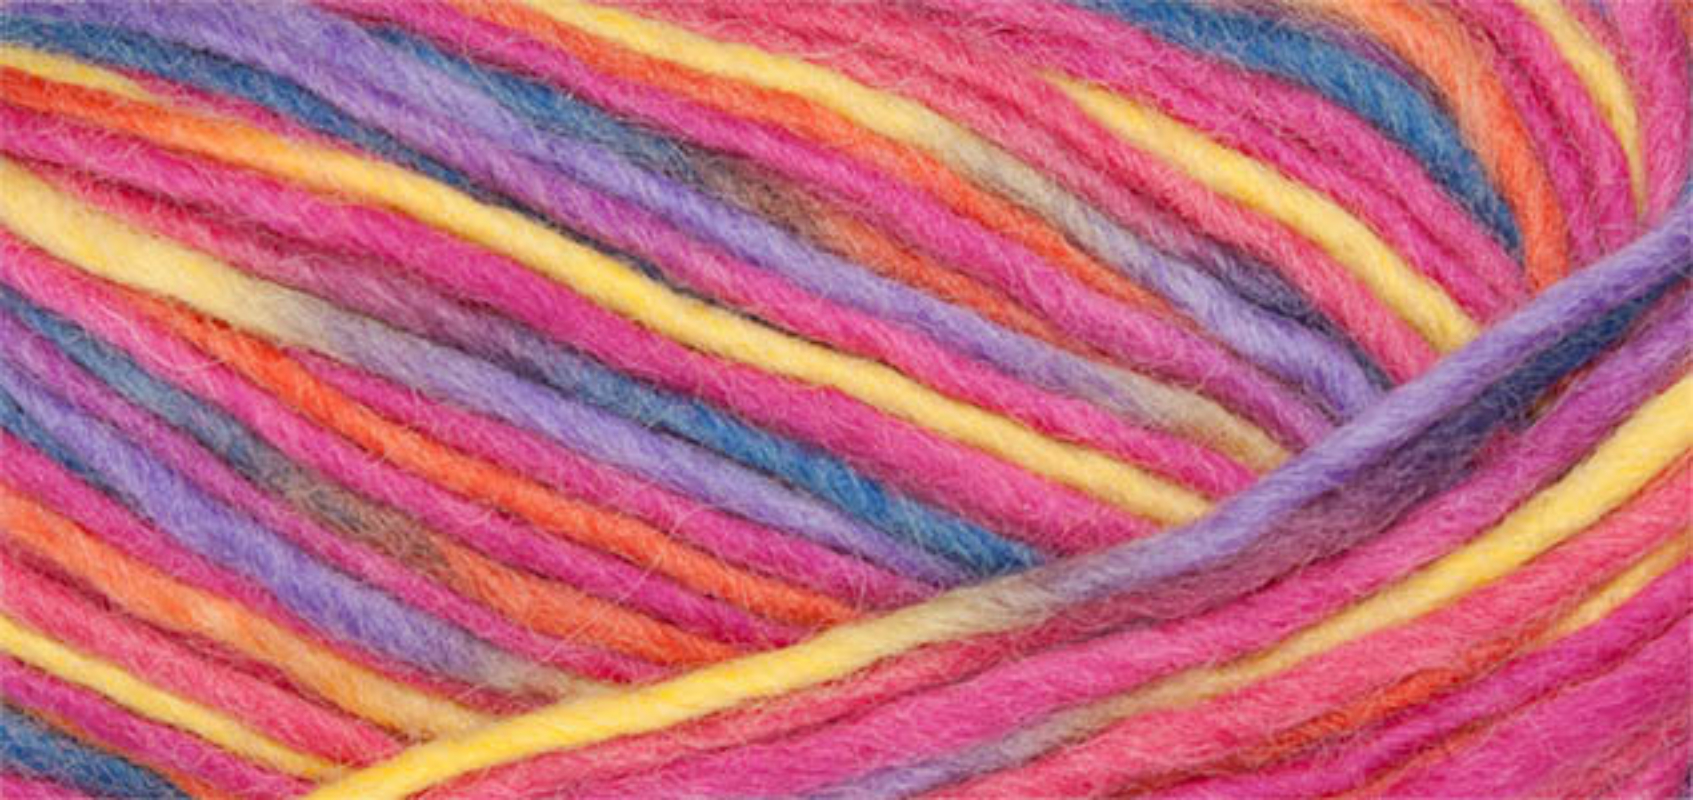 Filz Wolle Color Linie 231 von ONline 0109 - pink/orange/rot